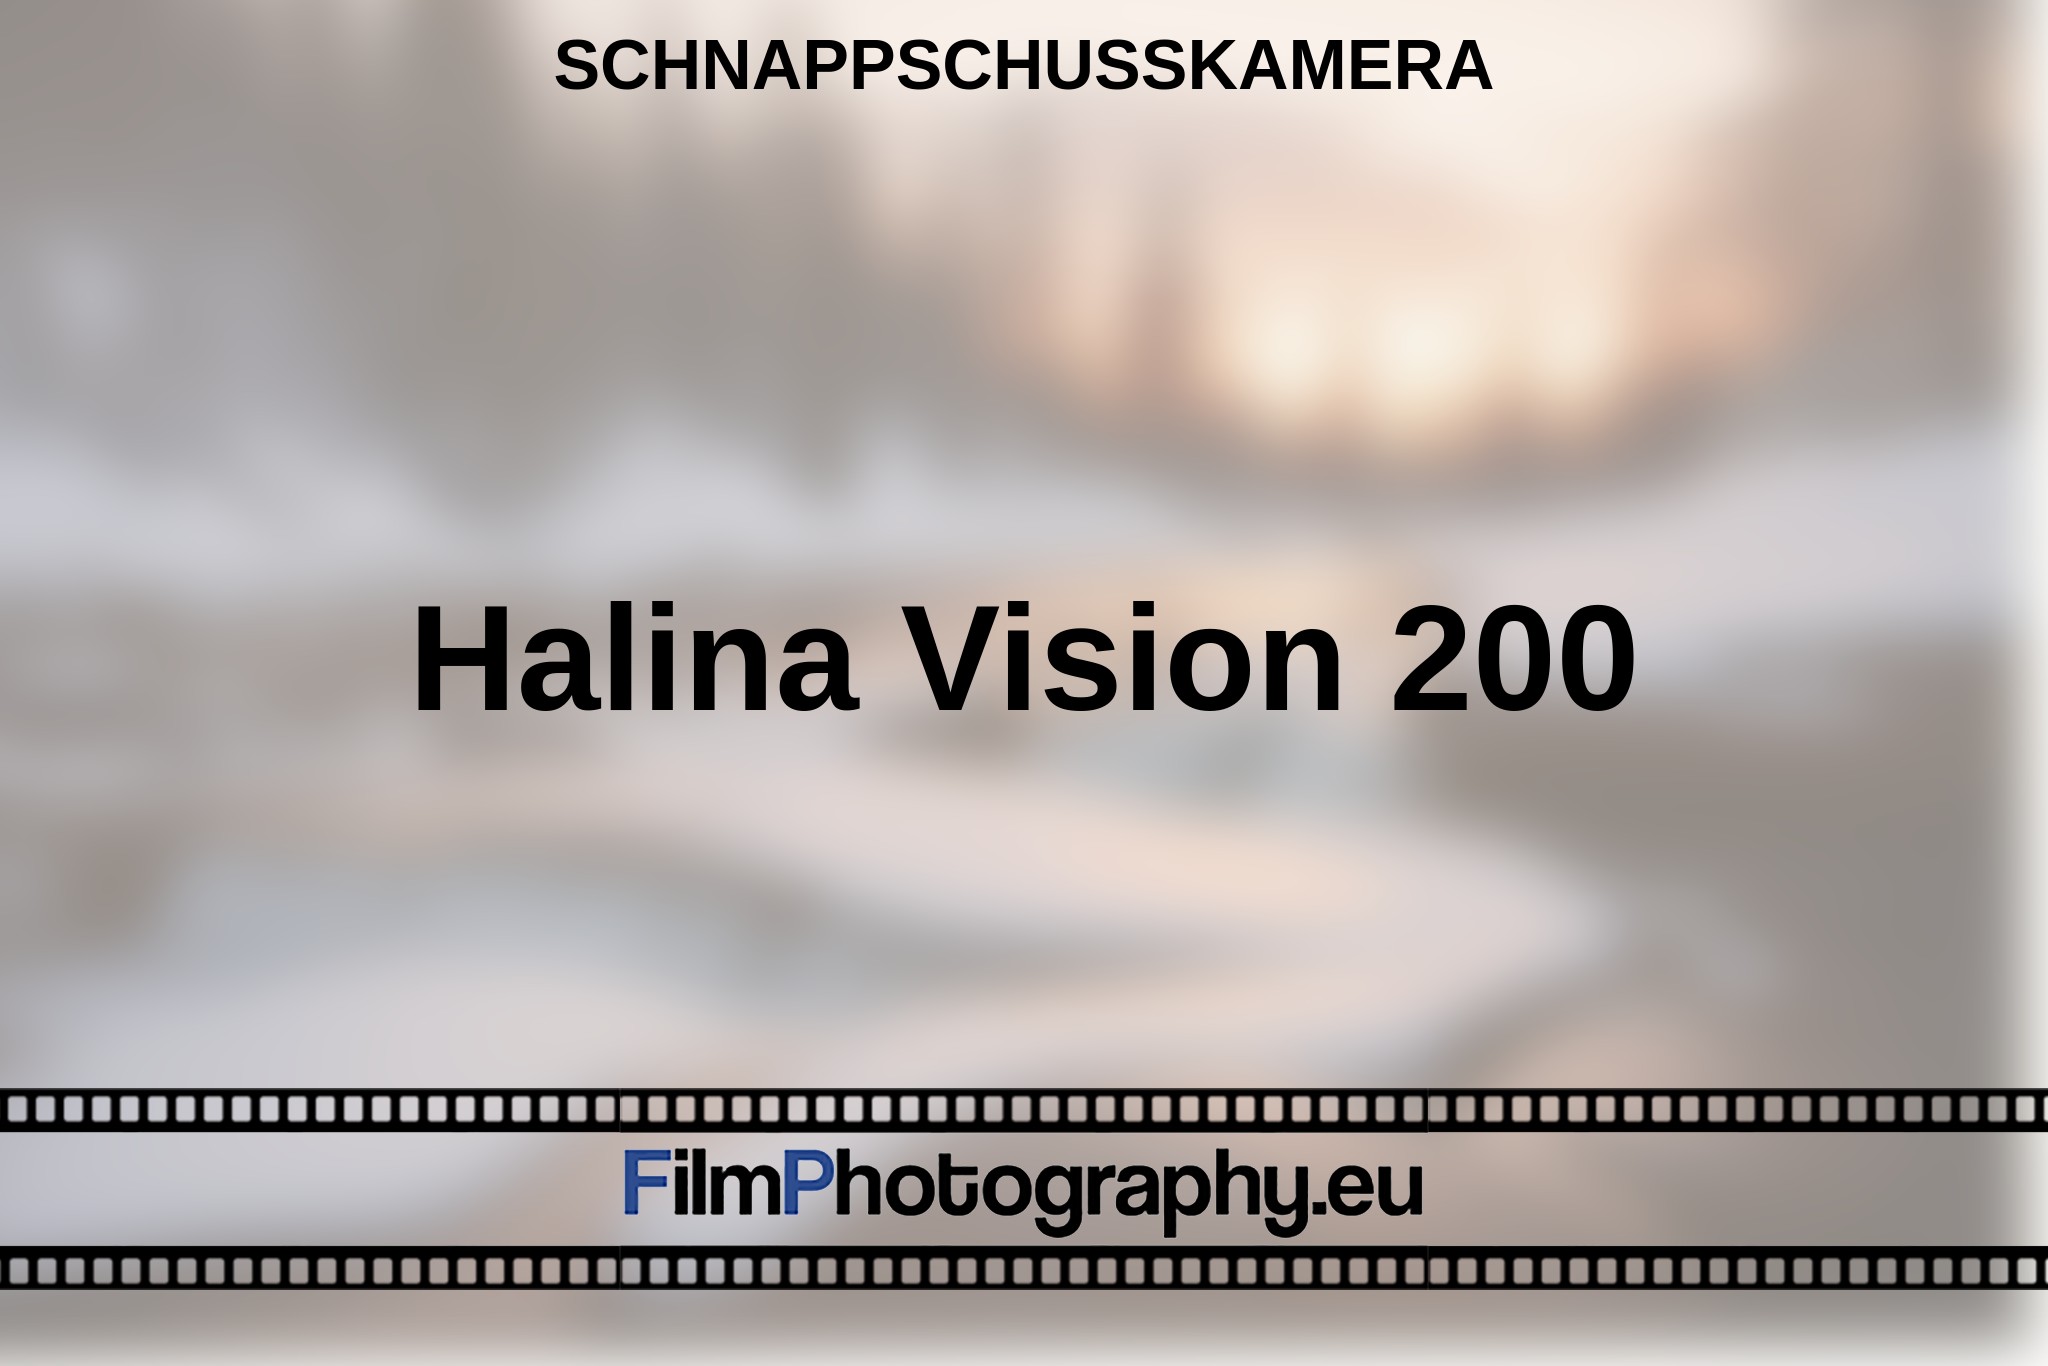 halina-vision-200-schnappschusskamera-bnv.jpg